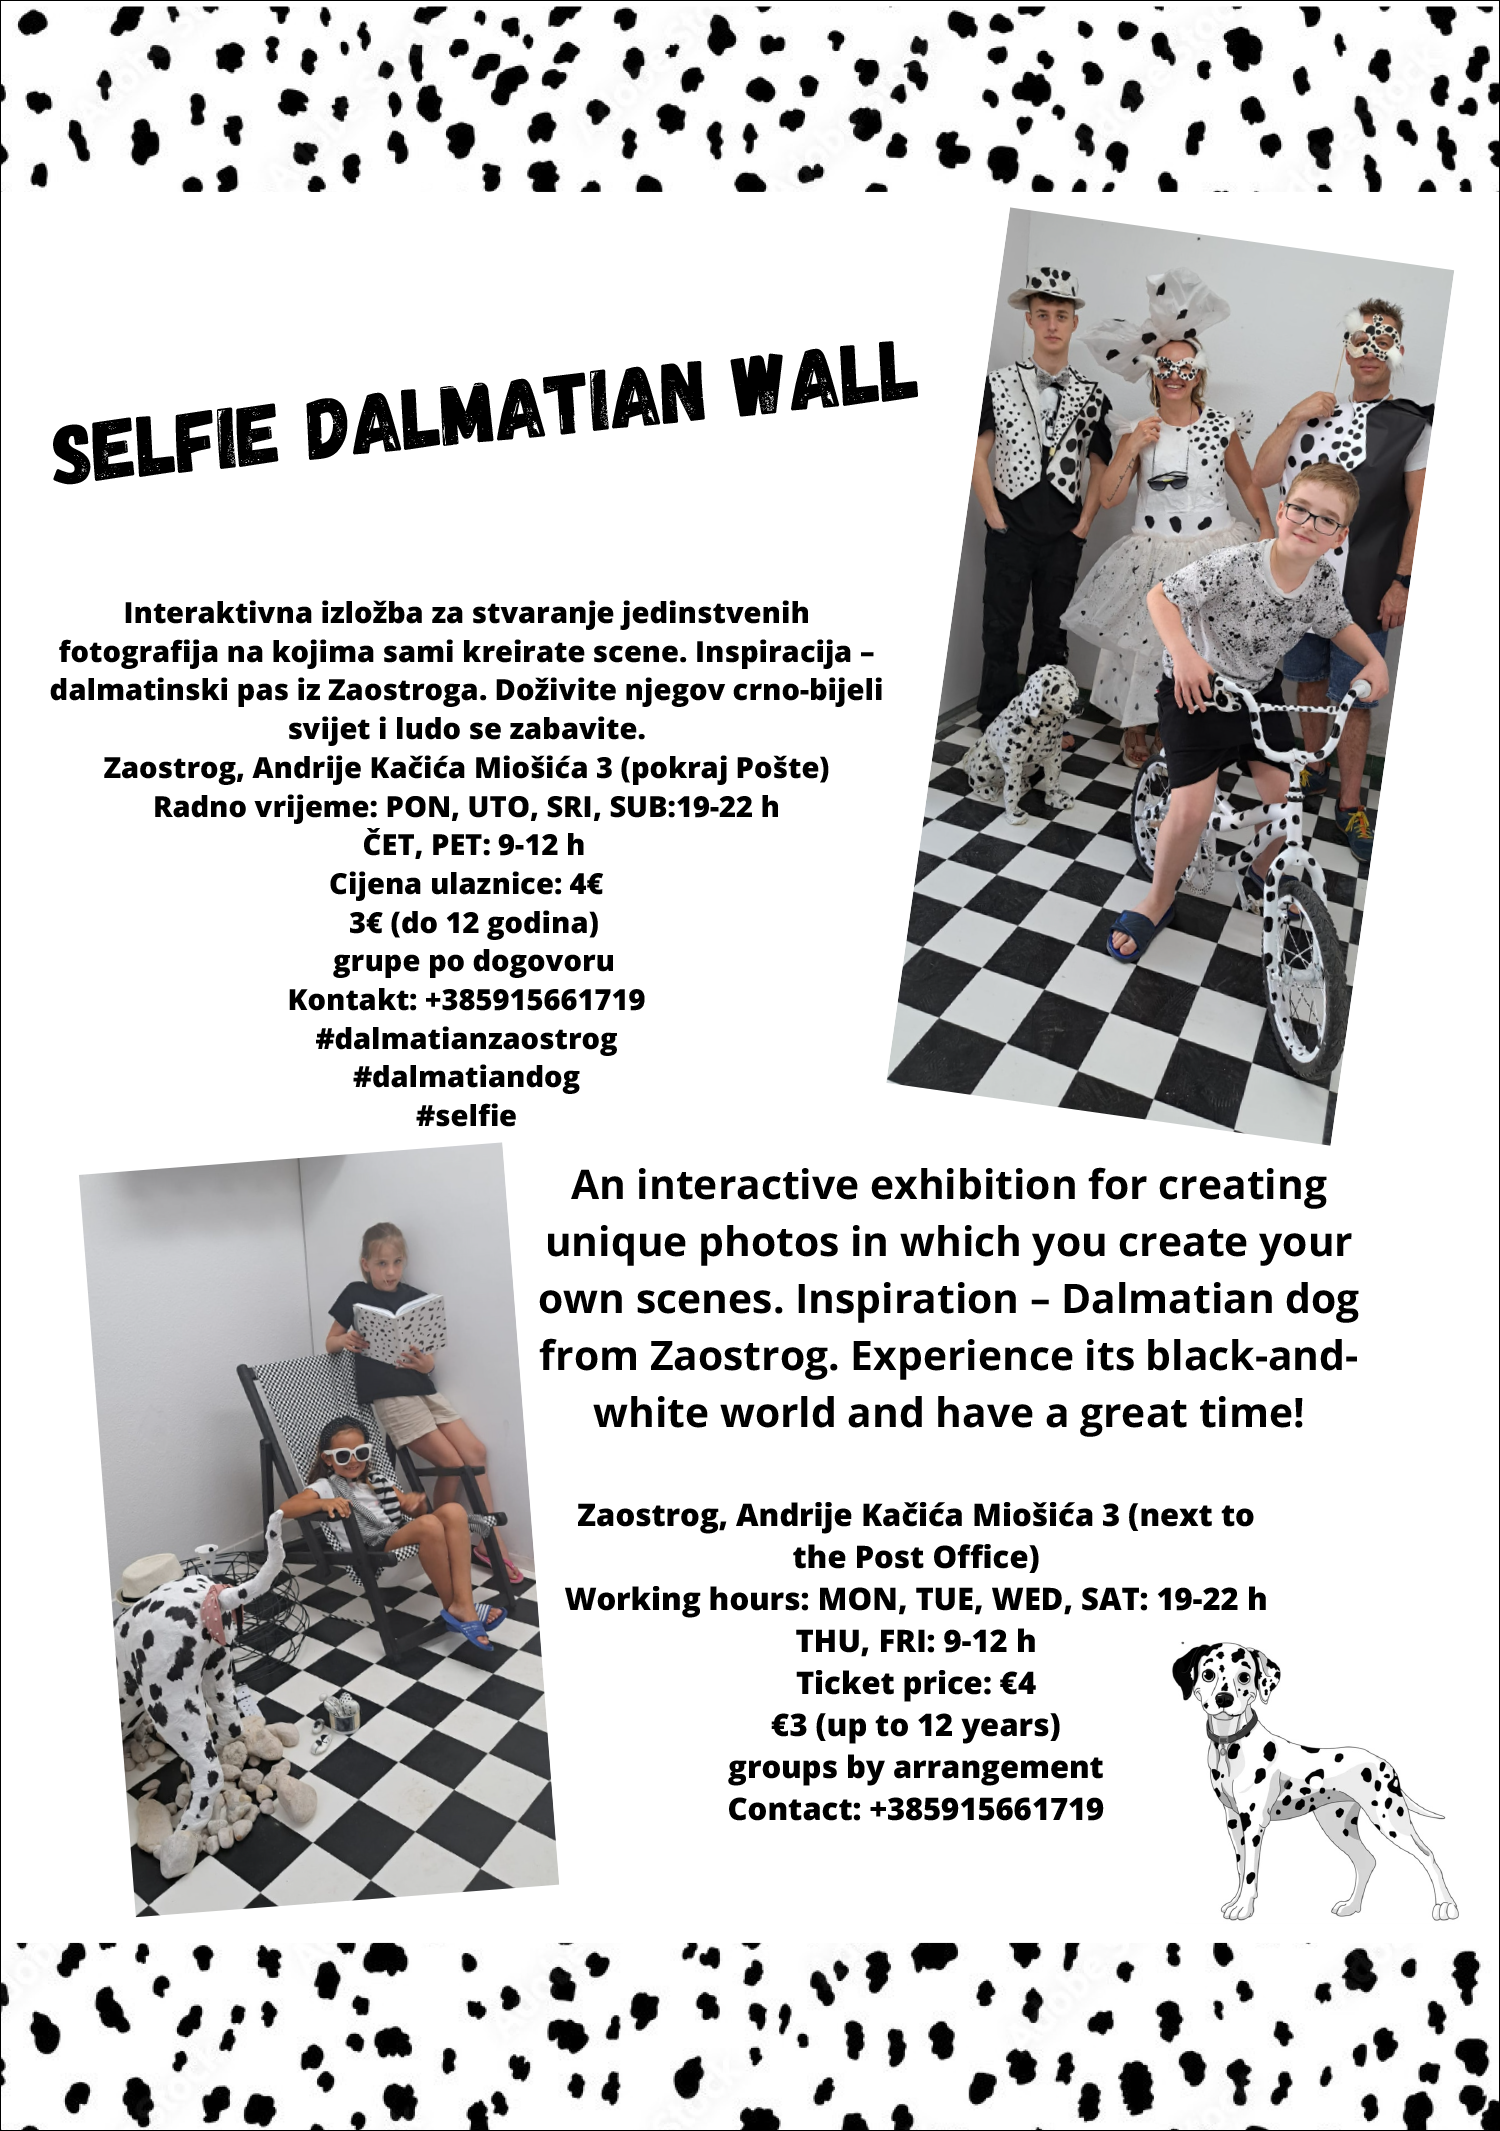 Selfie Dalmatian Wall